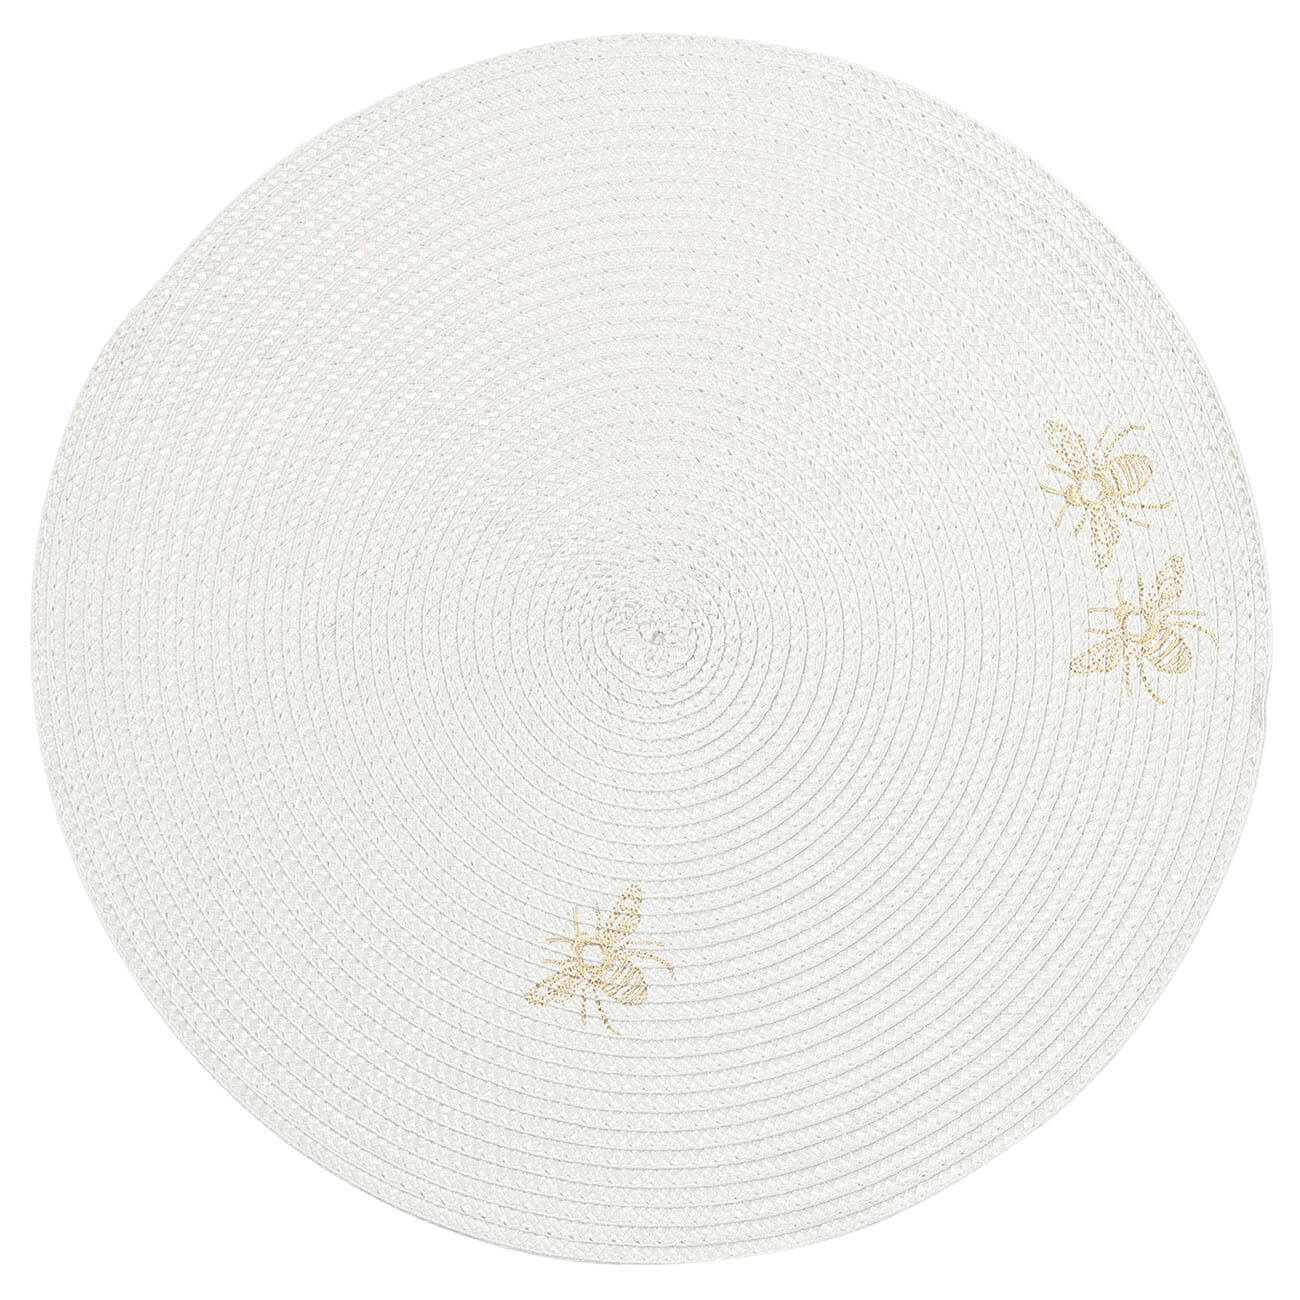 Салфетка под приборы, 38 см, полипропилен/ПЭТ, круглая, светло-серая, Пчелы, Circle embroidery салфетка микрофибра raccoon